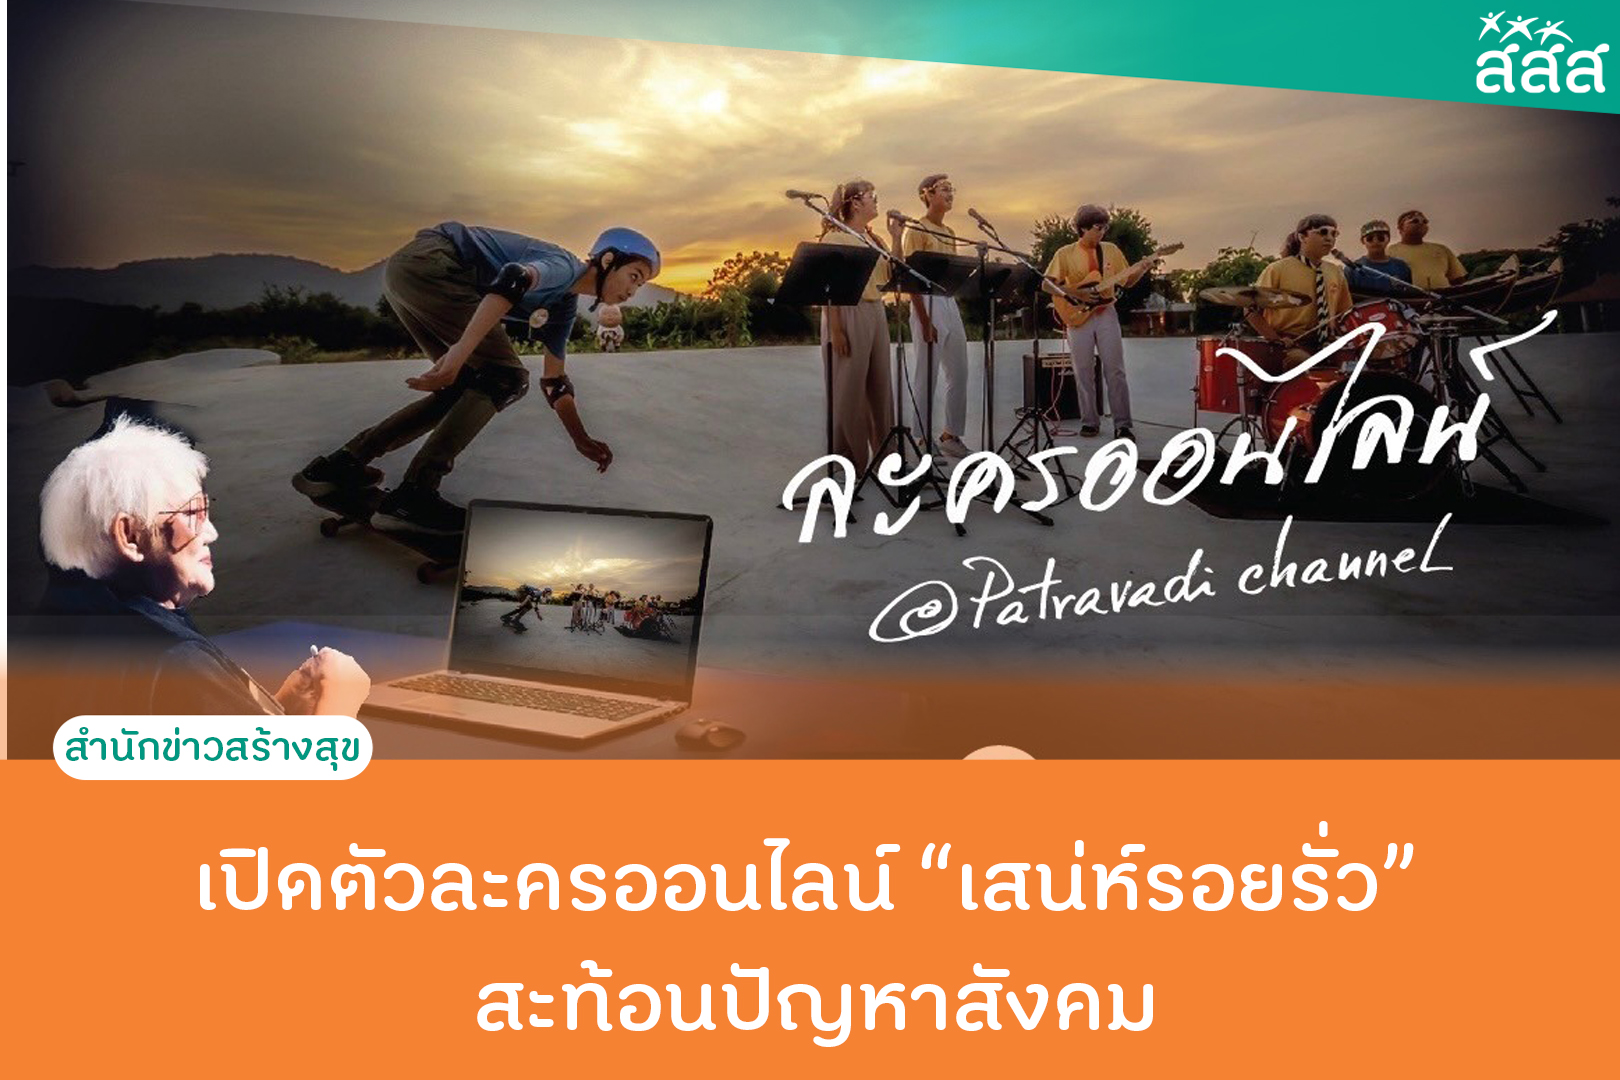 เปิดตัวละครออนไลน์เสน่ห์รอยรั่ว สะท้อนปัญหาสังคม thaihealth